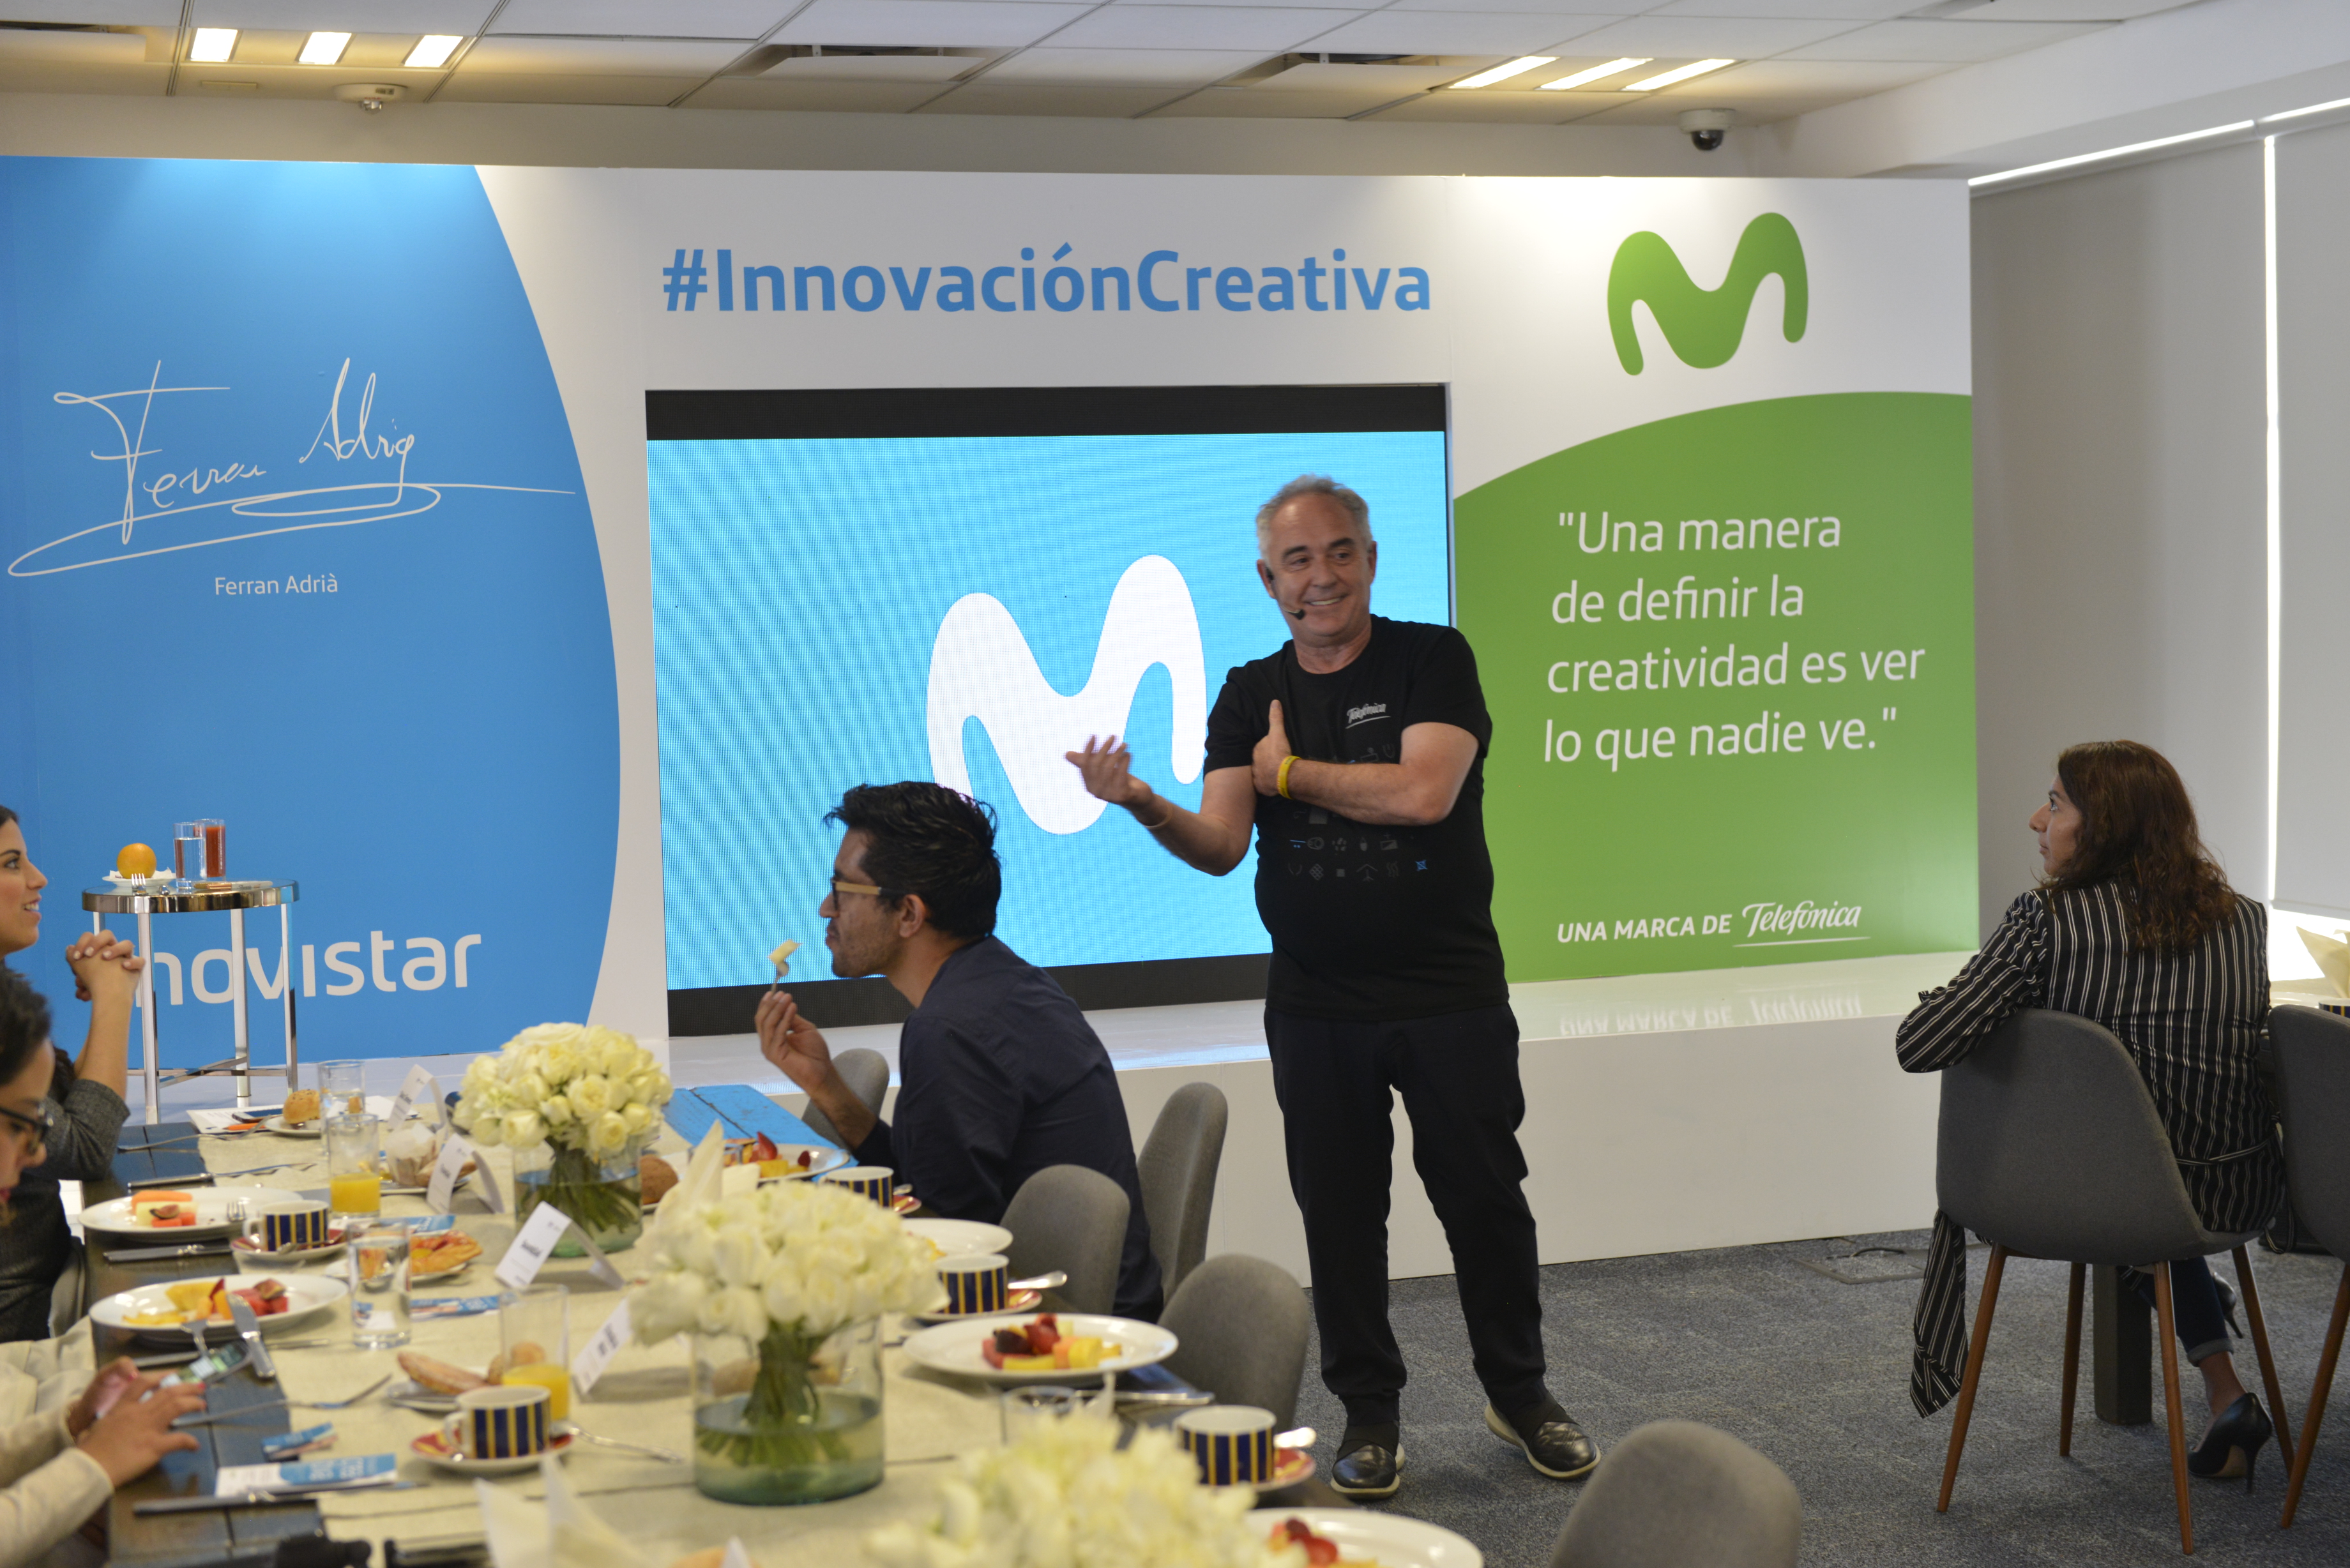  ¿Qué es innovación para Ferran Adriá, uno de los chefs más innovadores de los últimos tiempos?